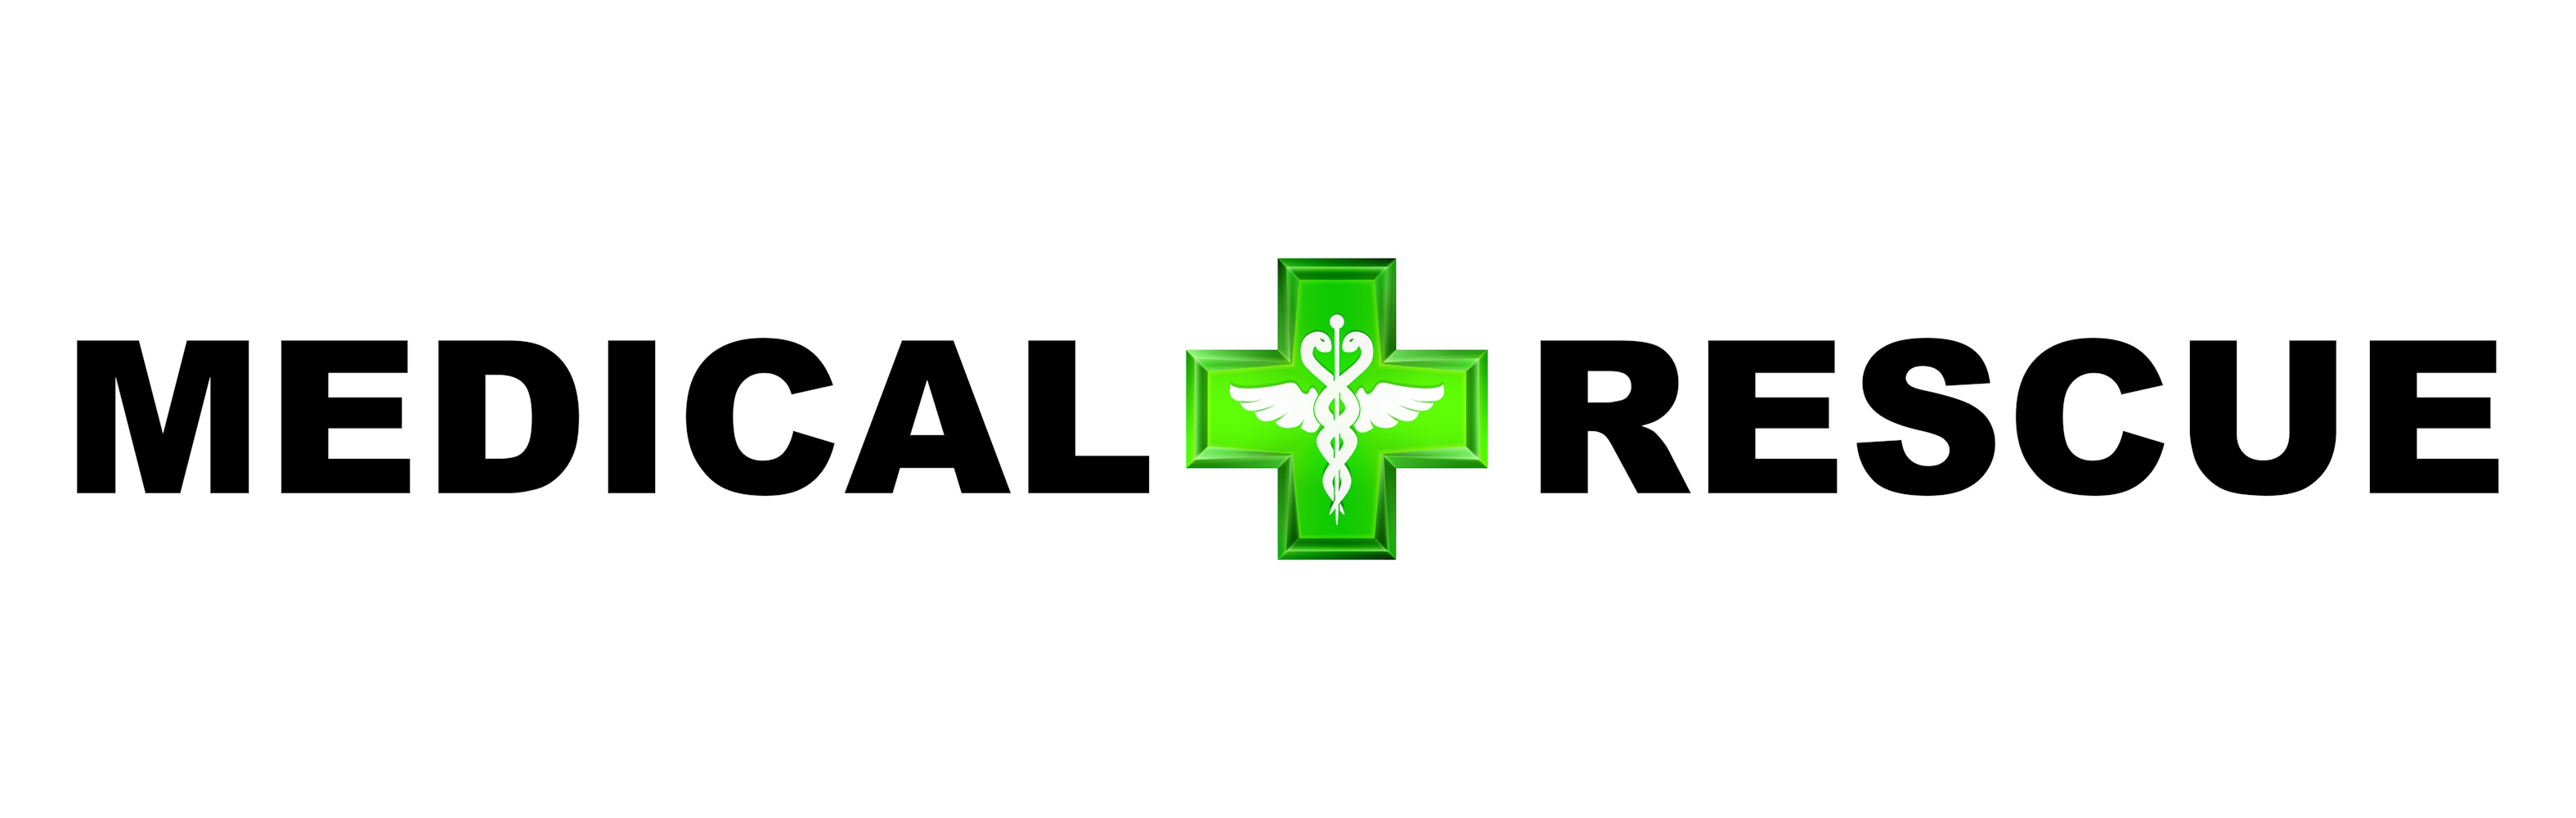 Medical Rescue Logo